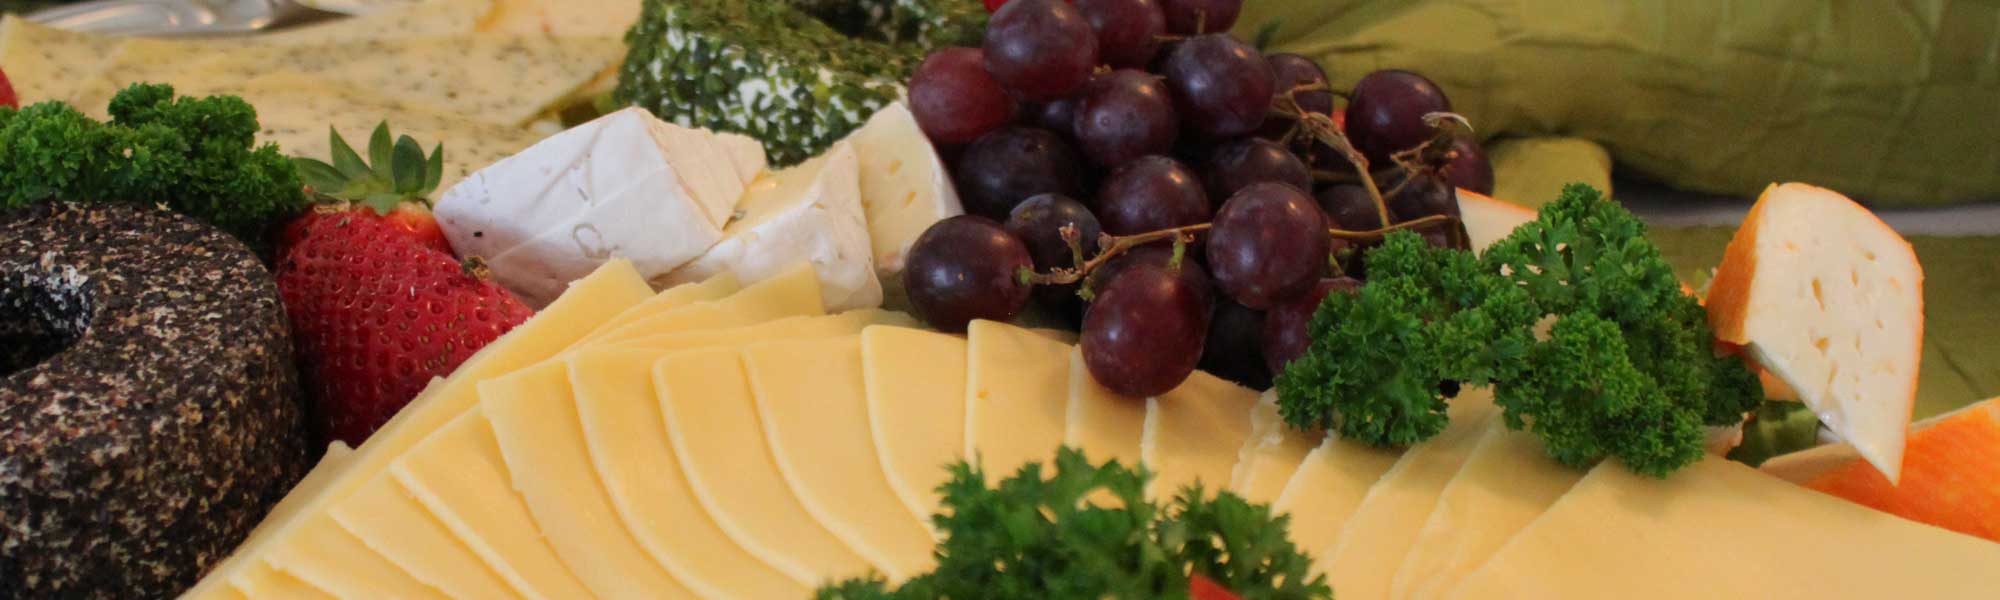 Platte mit Schnittk�se, Camembert und Weintrauben